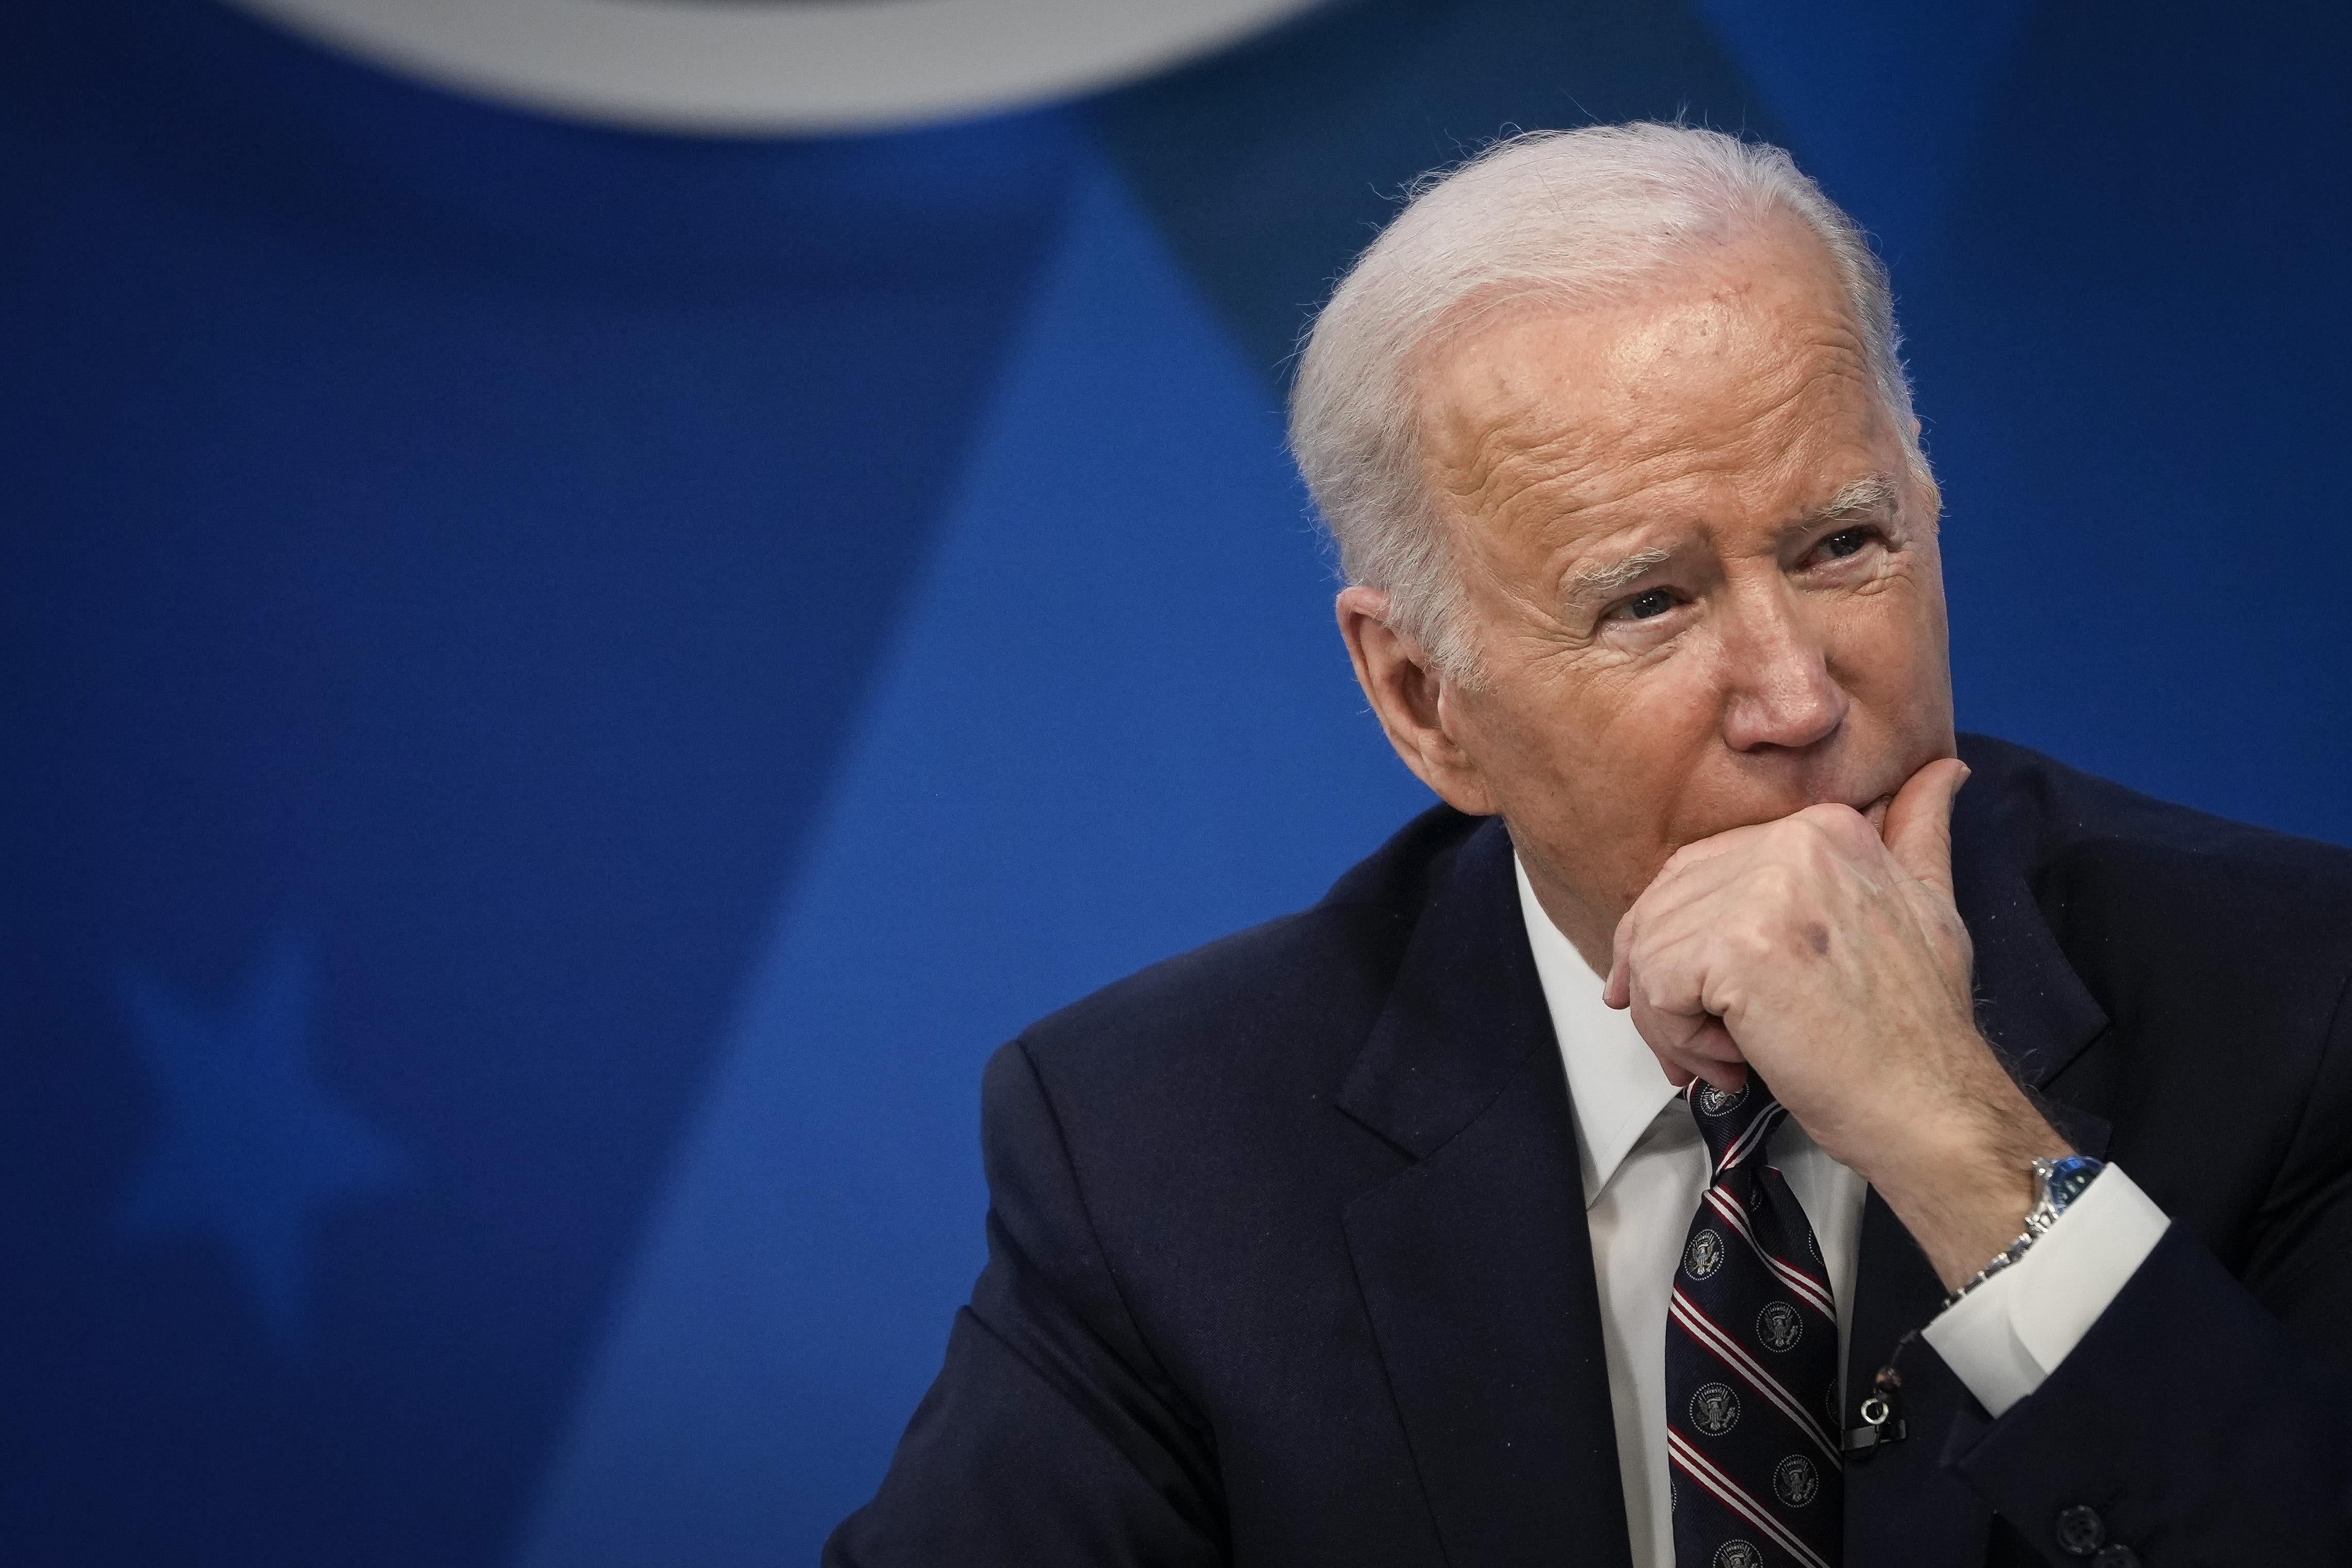 Joe Biden rests his chin in his hand.